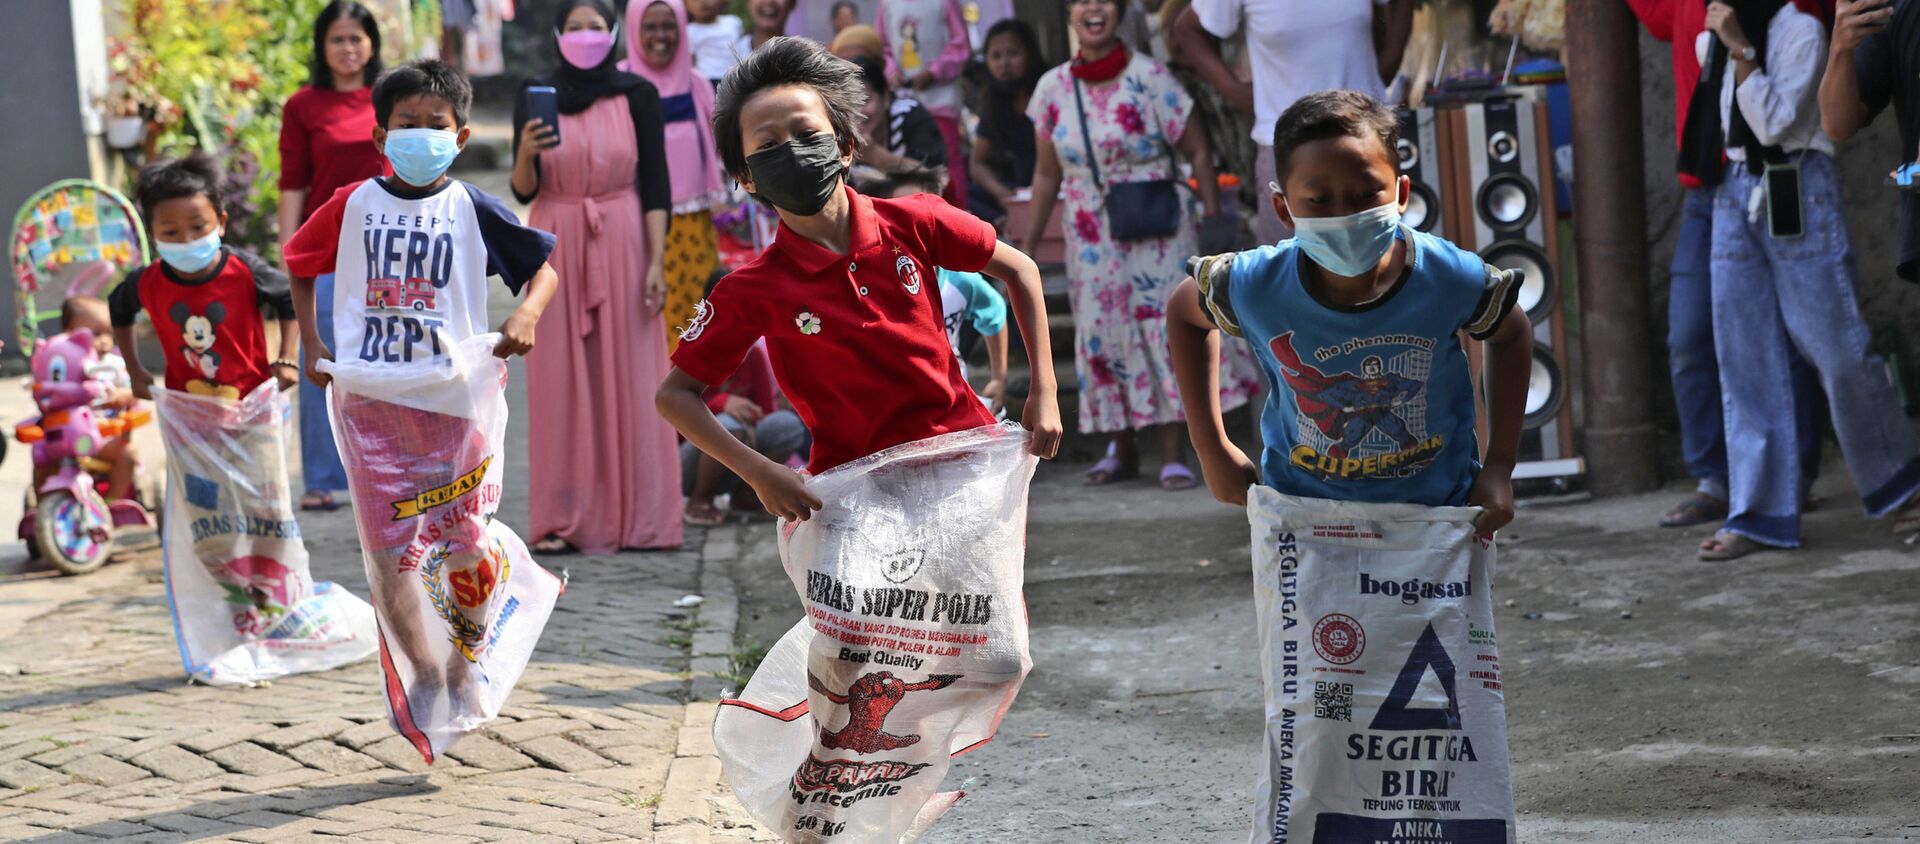 Дети в масках принимают участие в соревнованиях по бегу на мешках во время празднования Дня независимости в Джакарте, Индонезия - Sputnik Южная Осетия, 1920, 04.09.2021